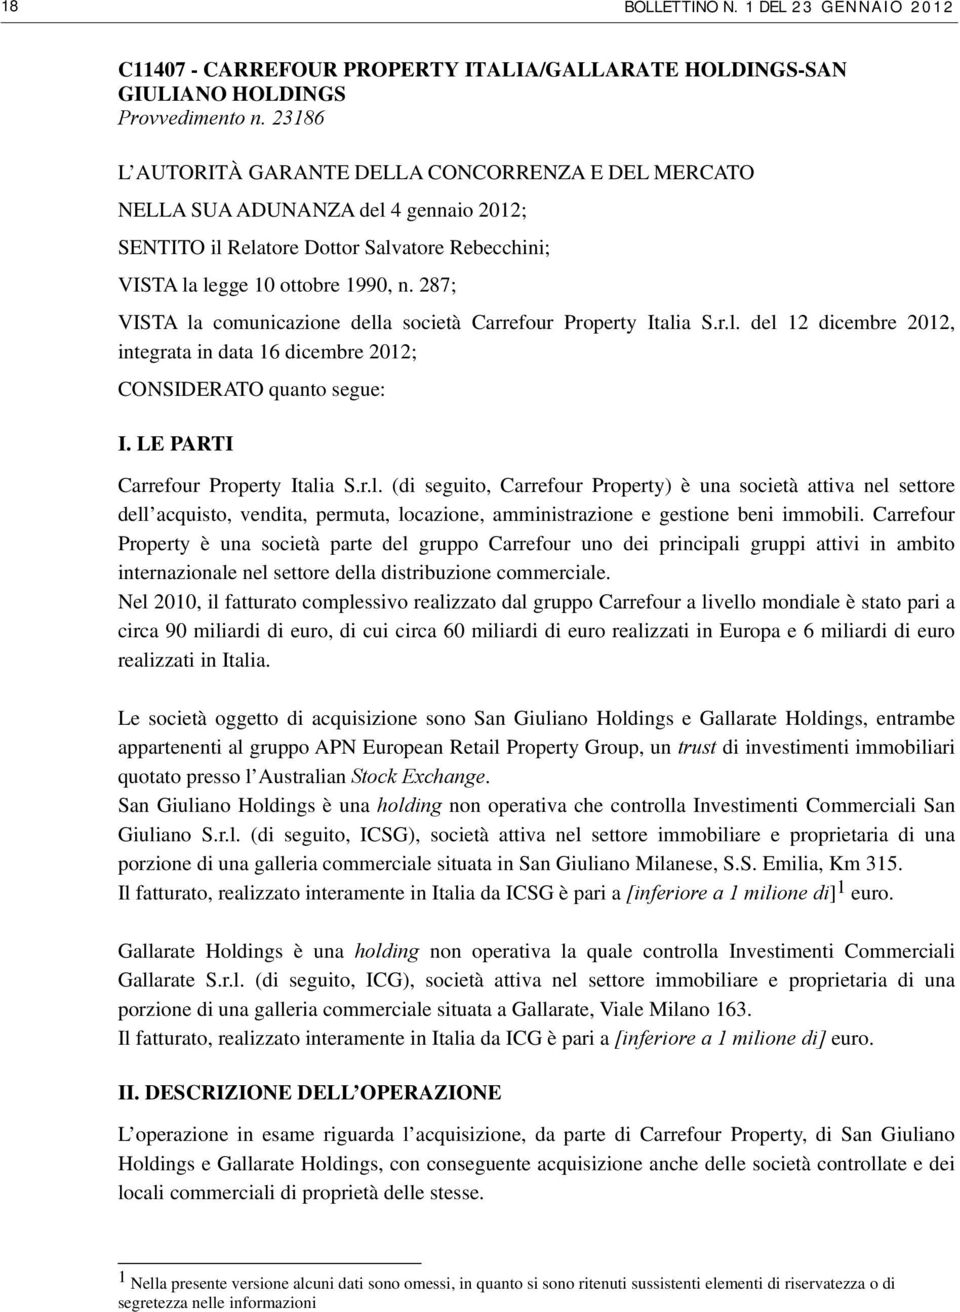 287; VISTA la comunicazione della società Carrefour Property Italia S.r.l. del 12 dicembre 2012, integrata in data 16 dicembre 2012; CONSIDERATO quanto segue: I. LE PARTI Carrefour Property Italia S.